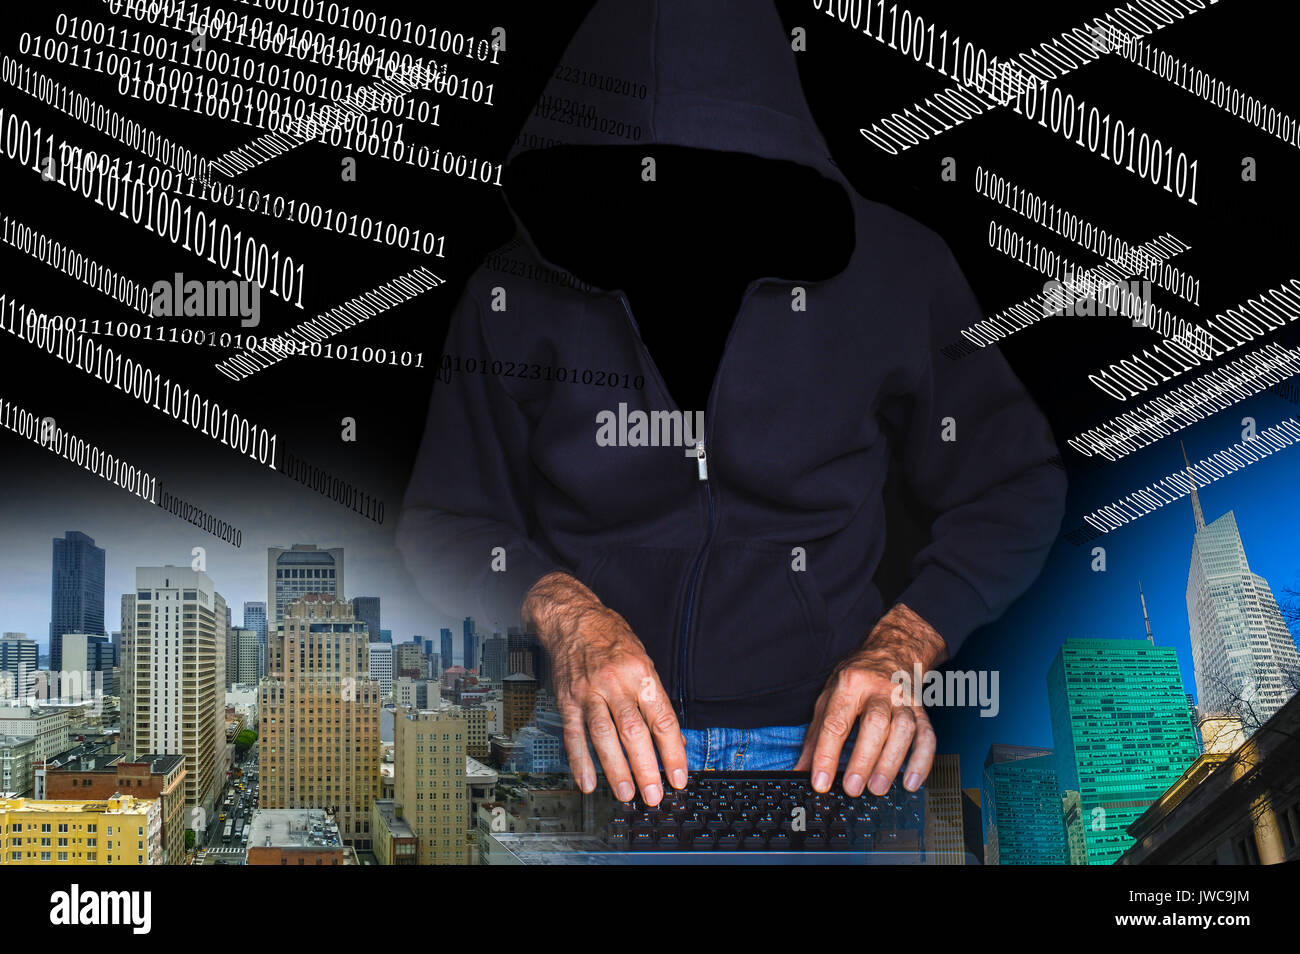 Hacker using laptop Banque D'Images